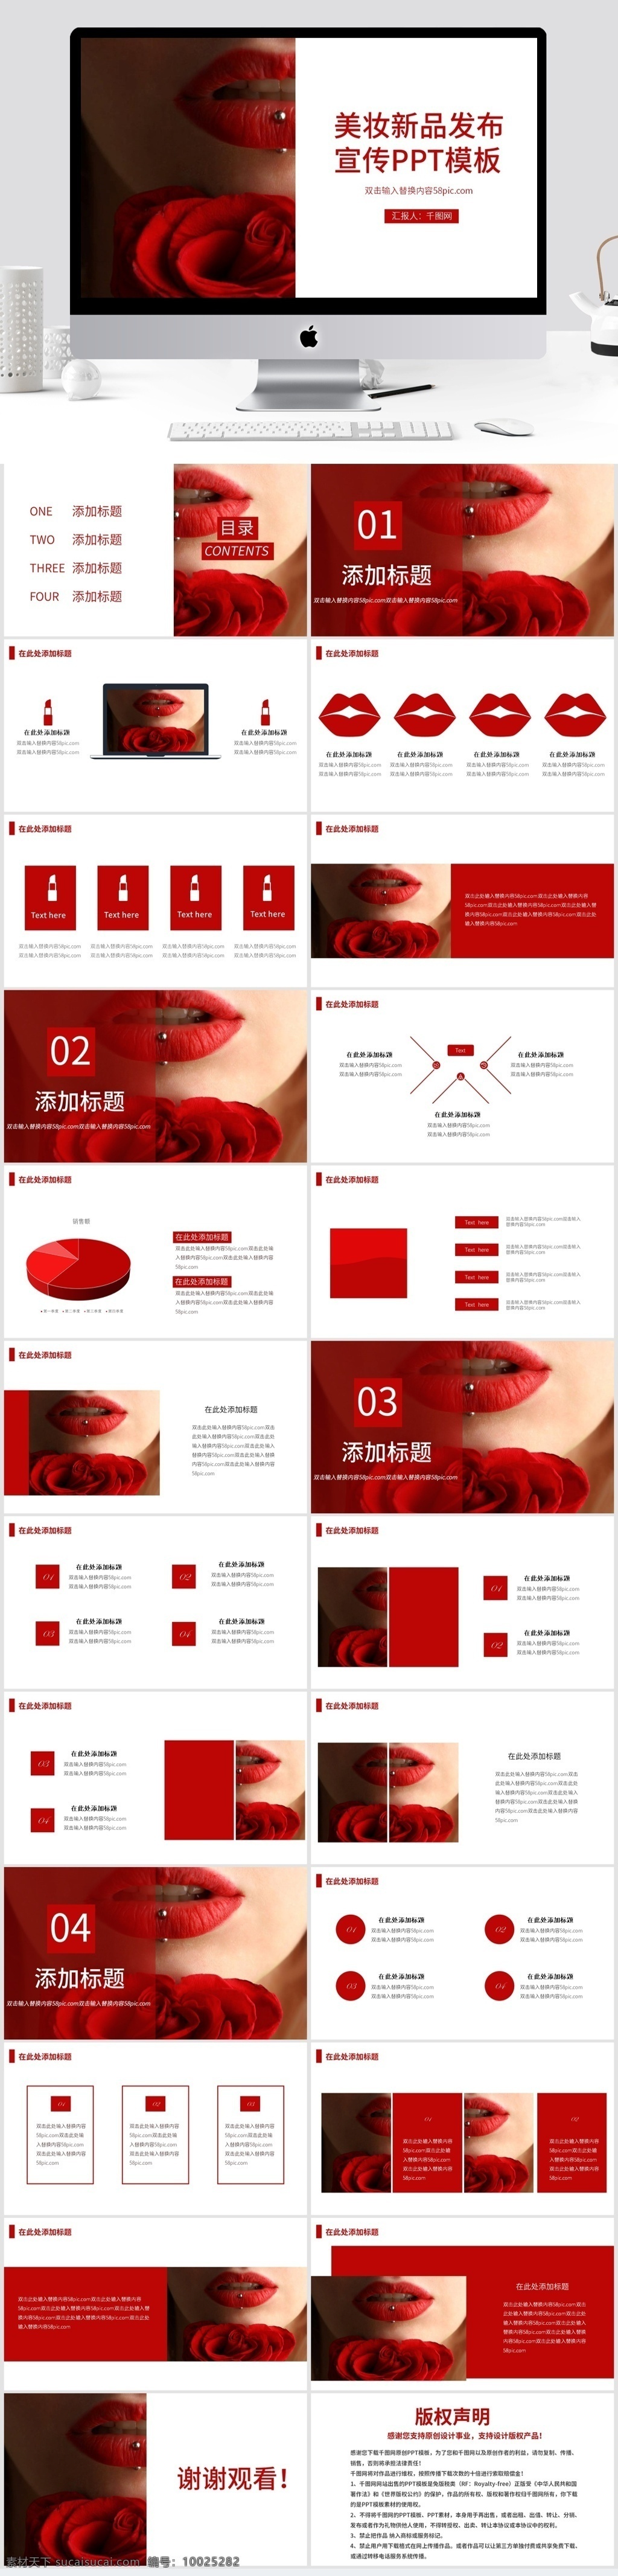 红色 高端 美 妆 新品 发布 宣传 模板 ppt模板 美妆发布 新品发布 推广宣传 营销策划